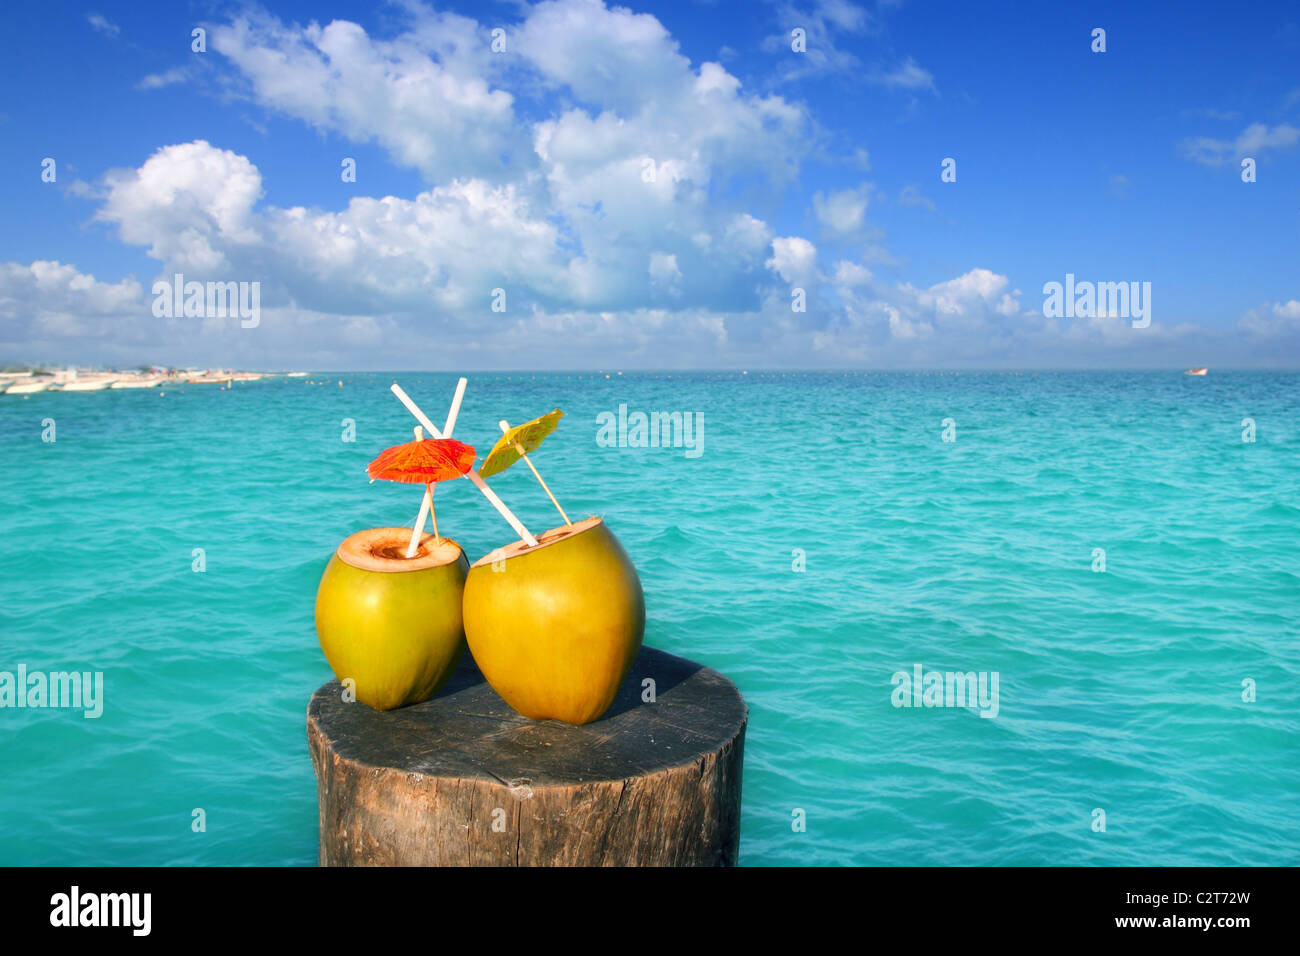 zwei frische Kokosnüsse Saft cocktail Wasser Strohhalme im karibischen Meer Stamm Stockfoto